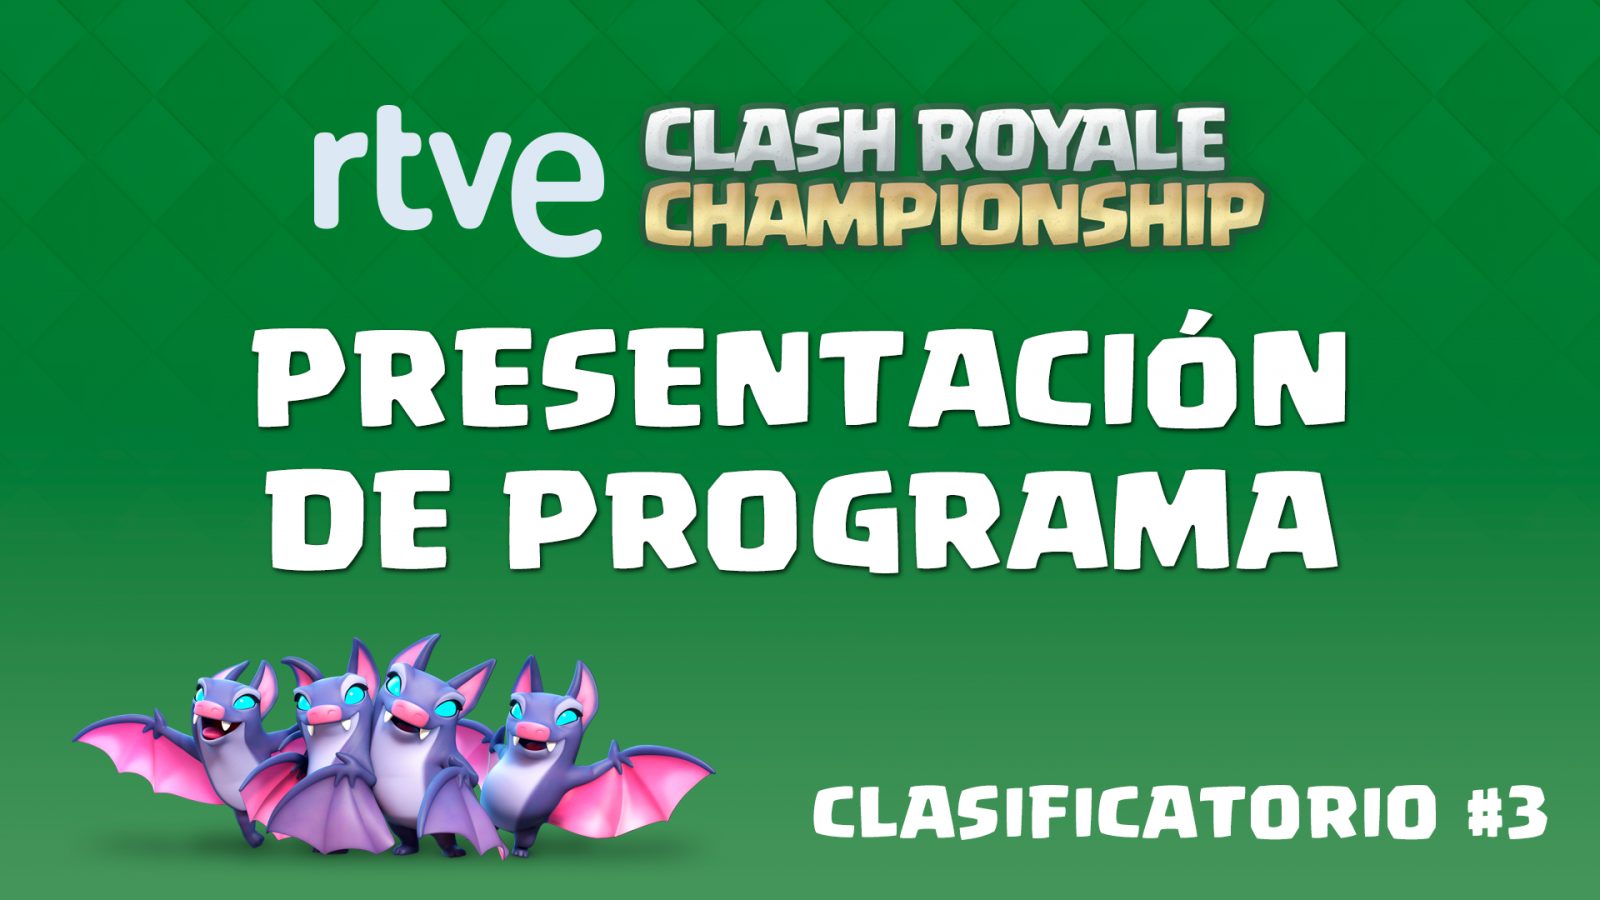 RTVE Clash Royale Championship. Clasificatorio #3 - Presentación